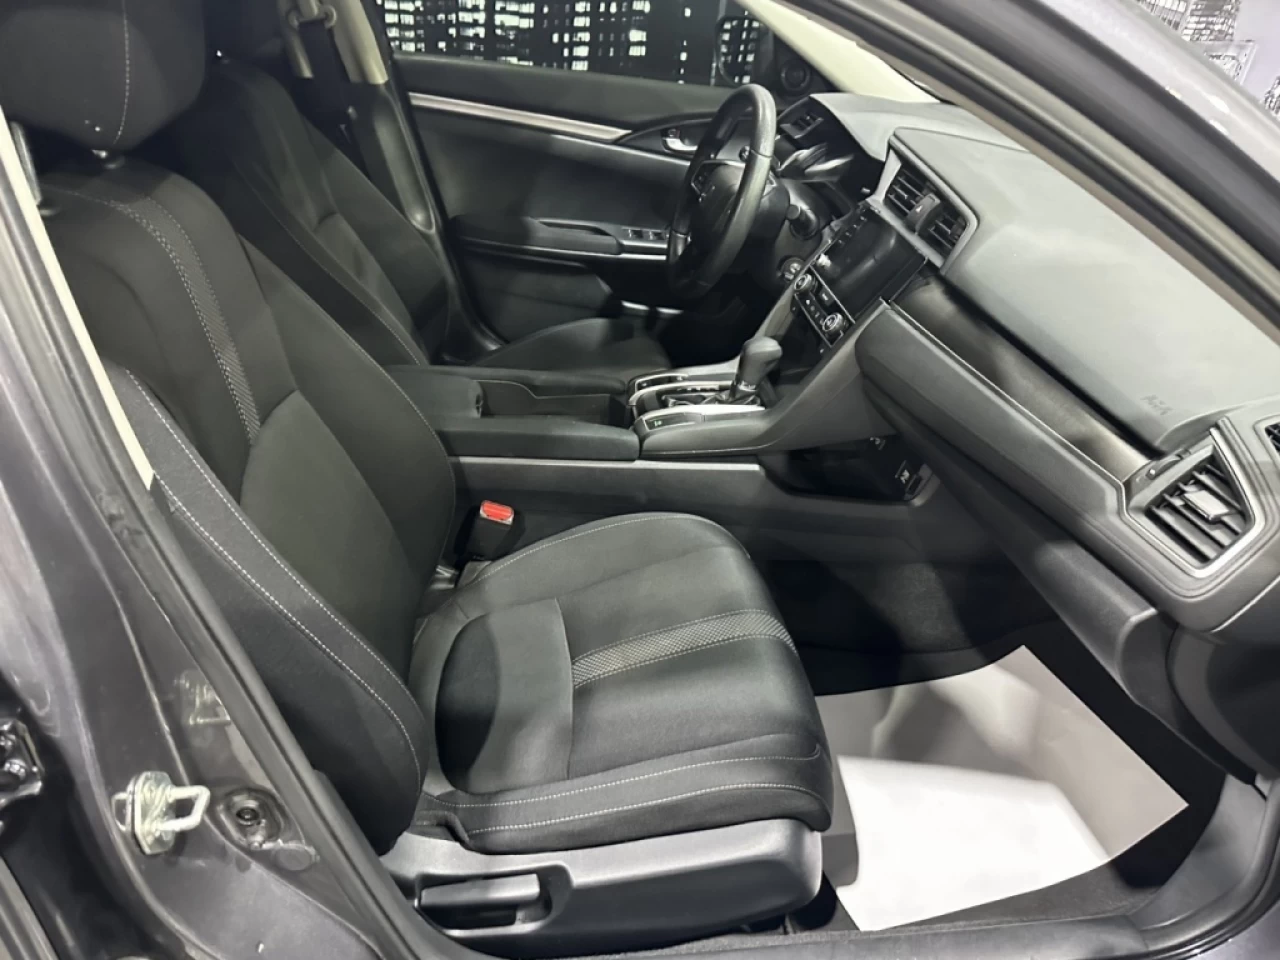 2019 Honda Civic Sedan LX AUTOMATIQUE JAMAIS ACCIDENTÉ AVEC 116 400KM Image principale